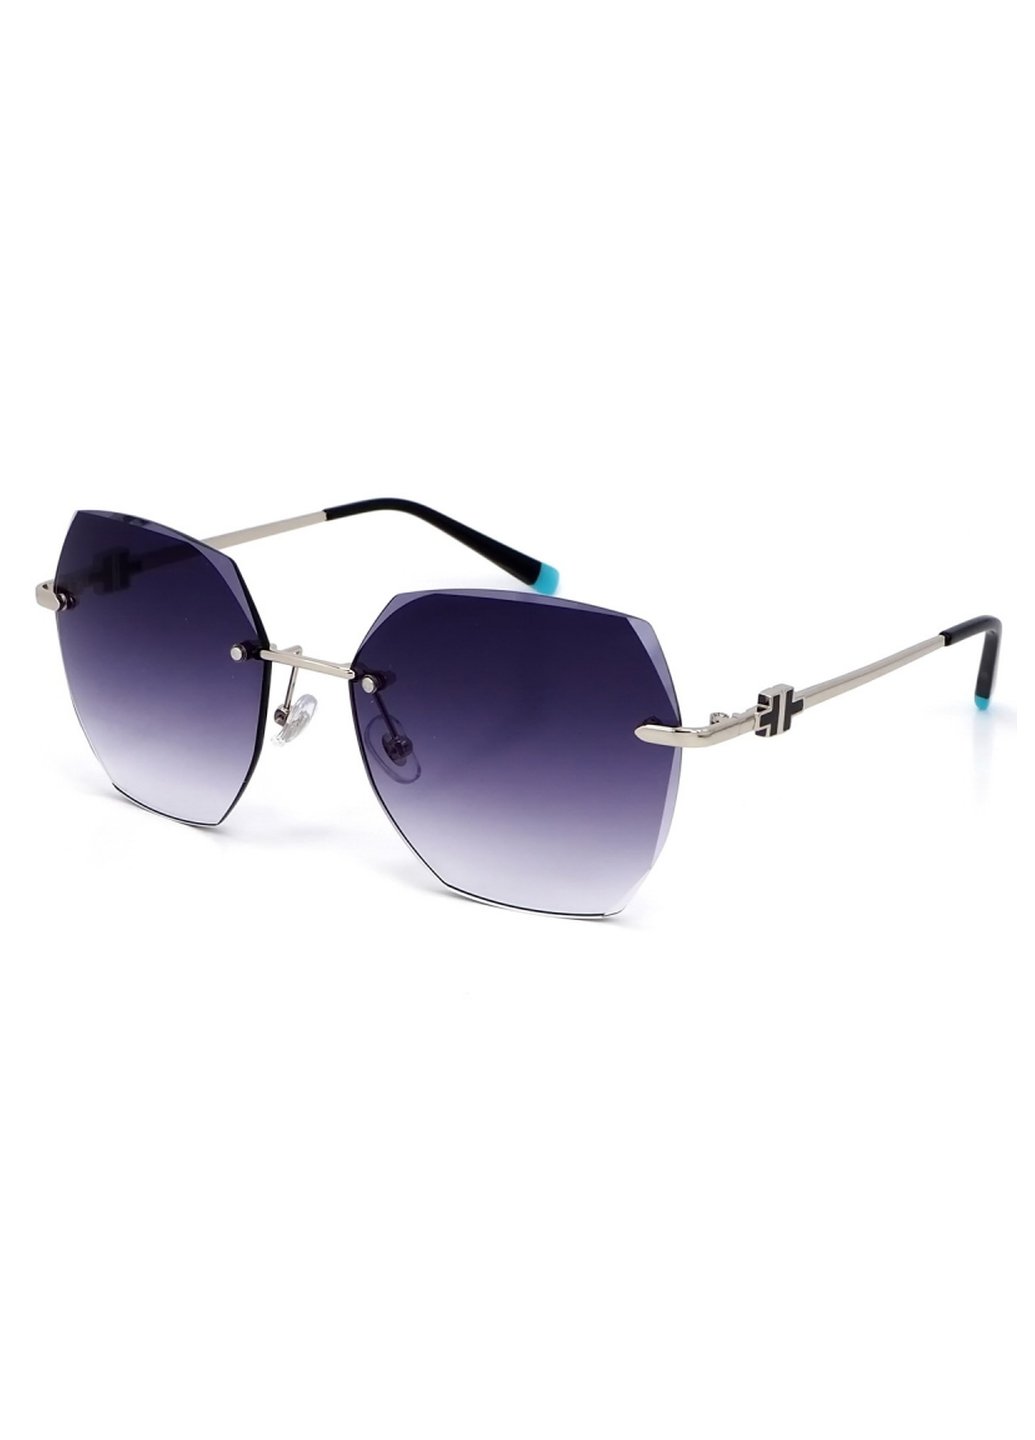 Купить Женские солнцезащитные очки Merlini с поляризацией S31838 117105 - Серый в интернет-магазине